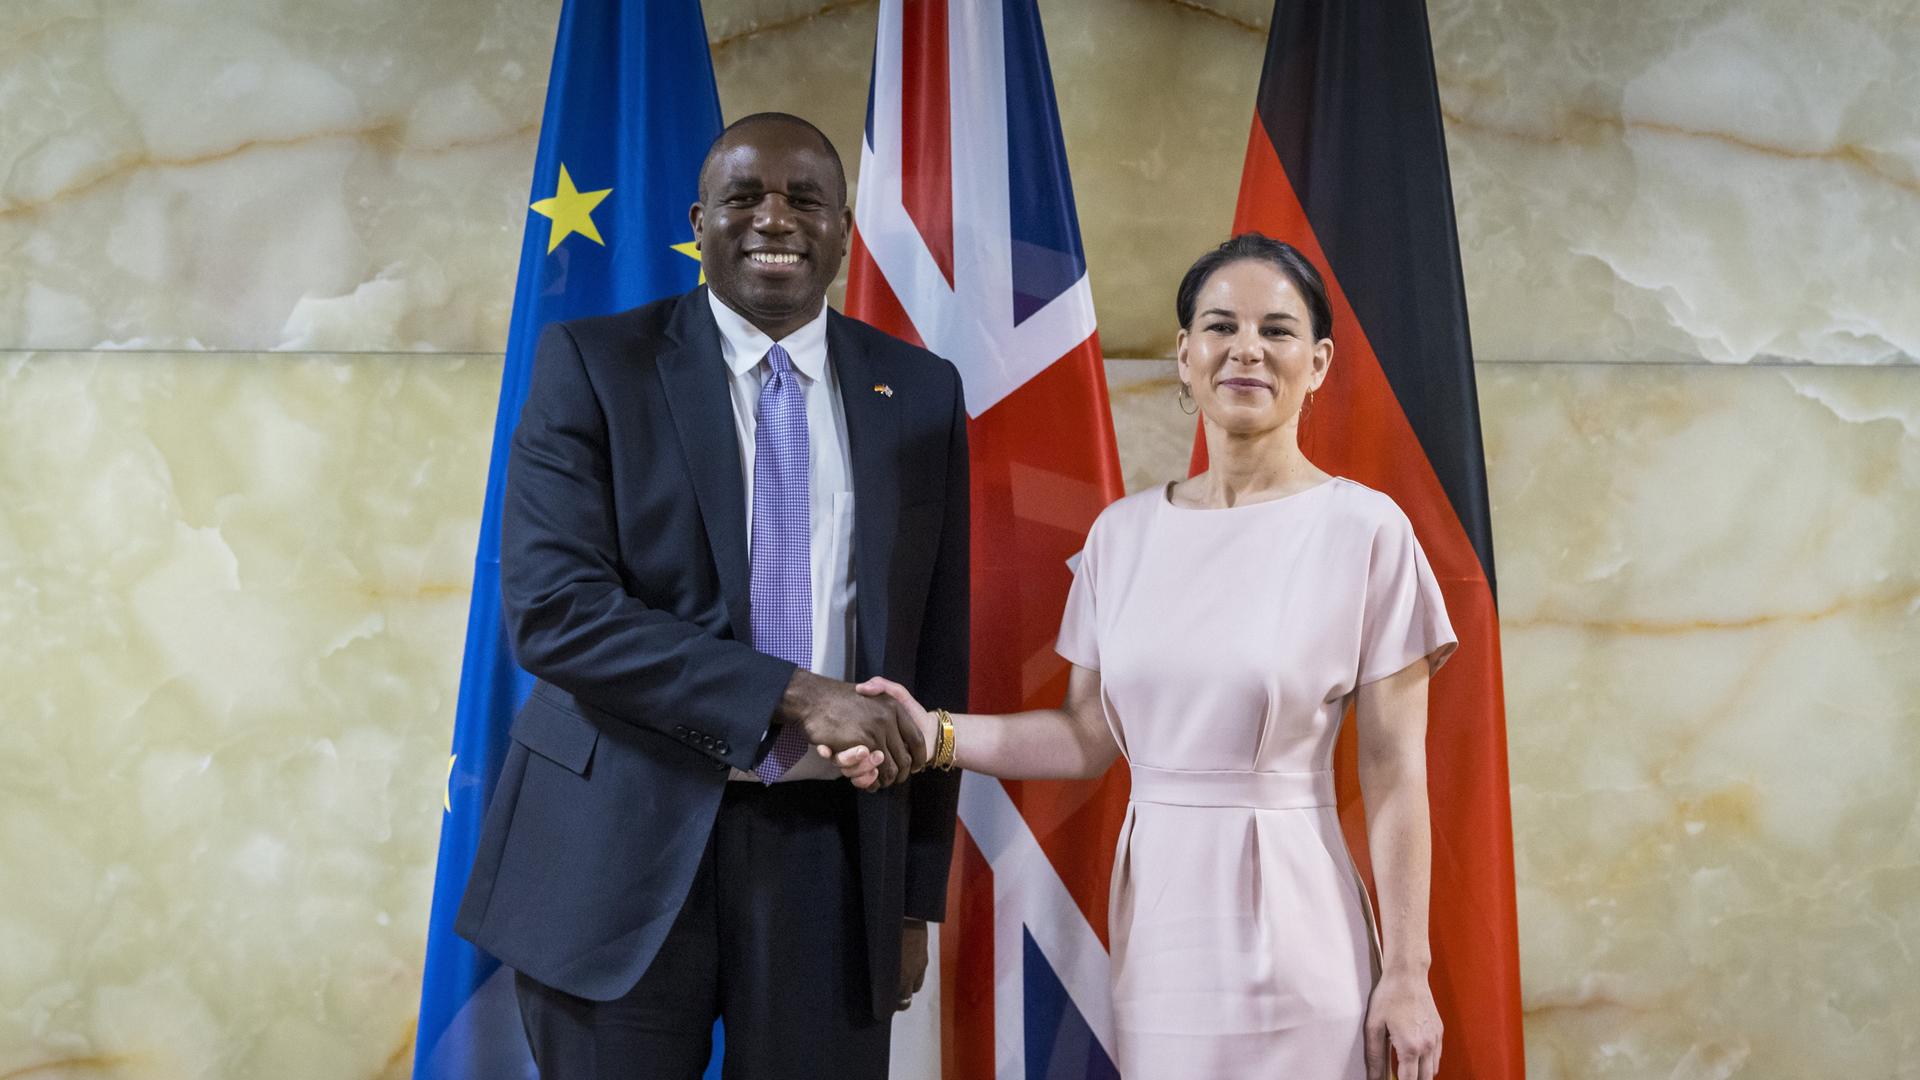 Der neue britische Außenminister Lammy und die deutsche Außenministerin Baerbock stehen vor der britischen, deutschen und europäischen Fahne und schütteln sich die Hände. 